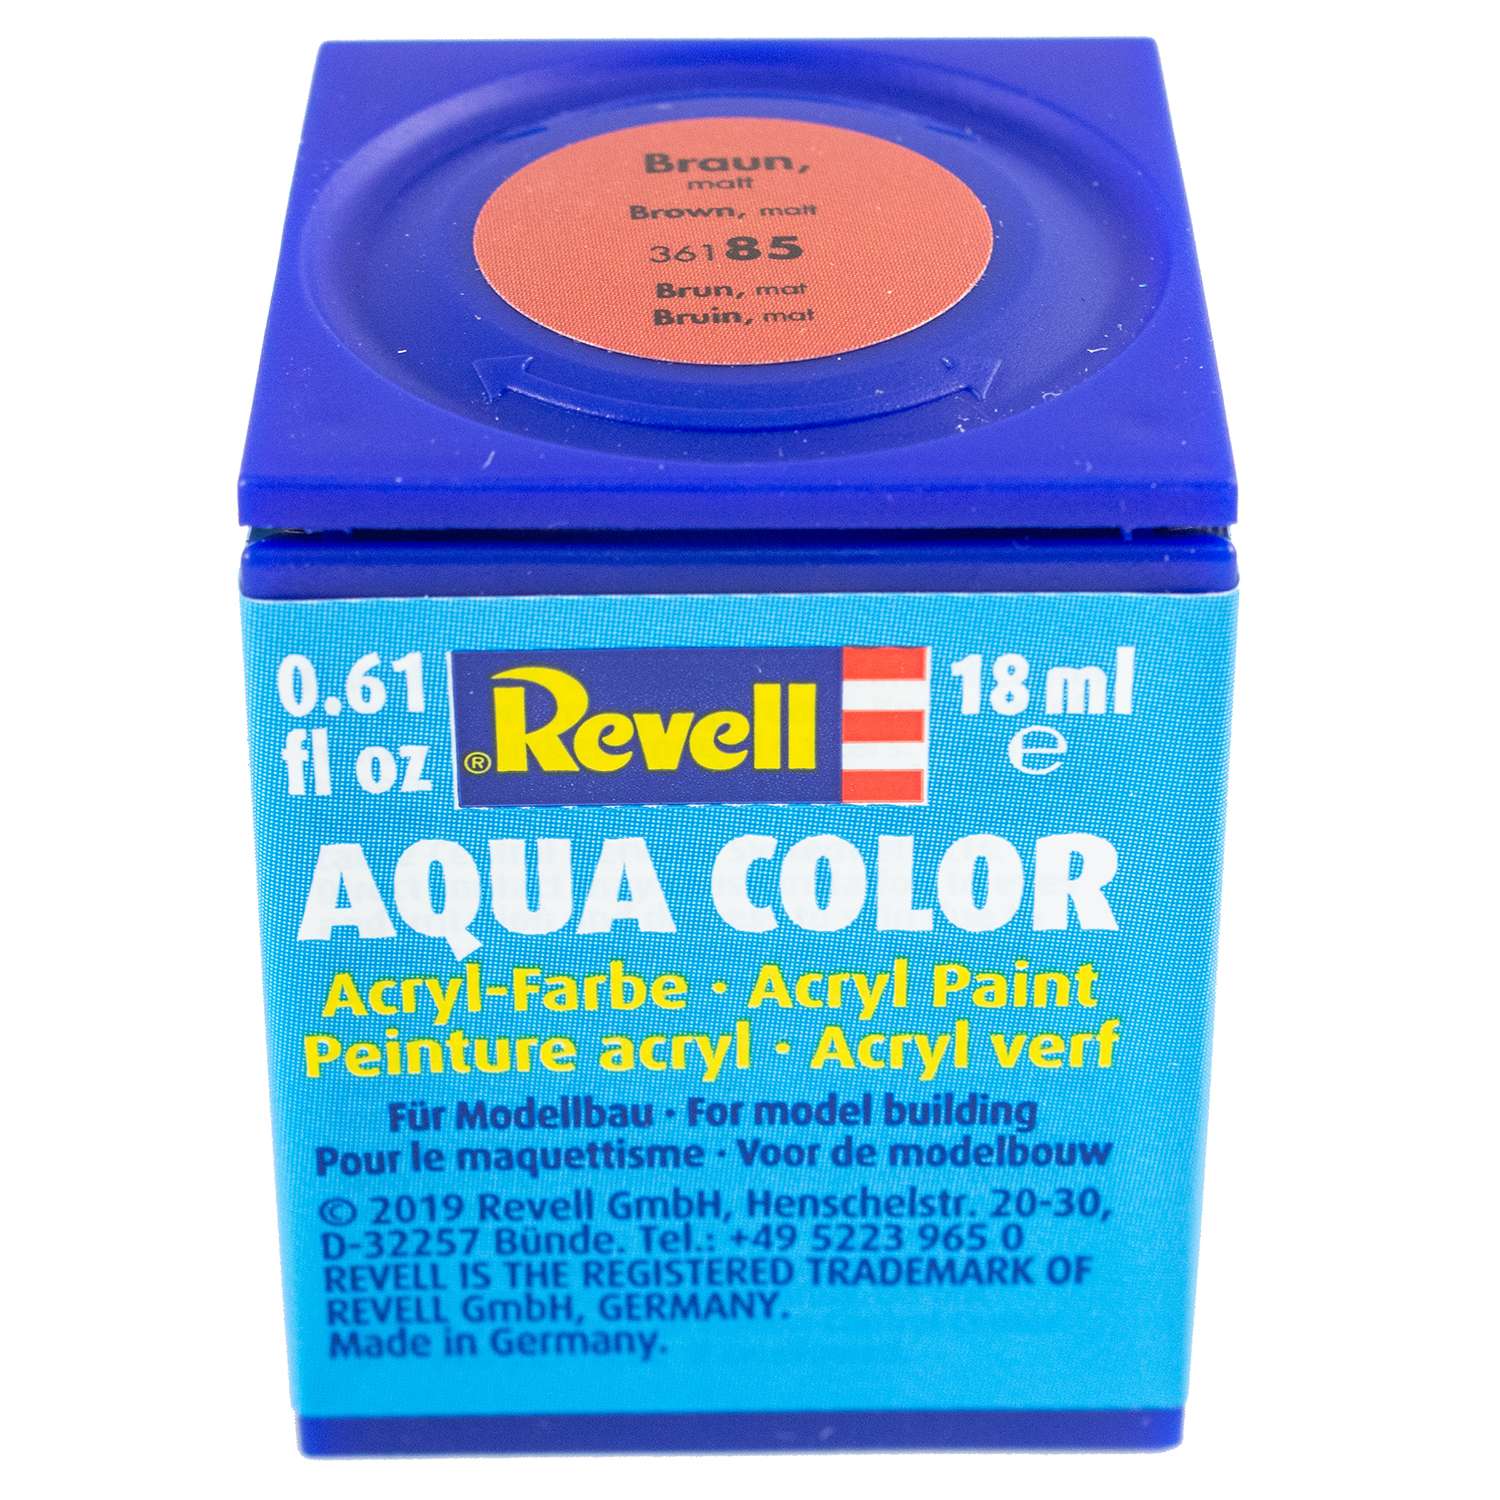 Аква-краска Revell коричневая матовая 36185 - фото 1